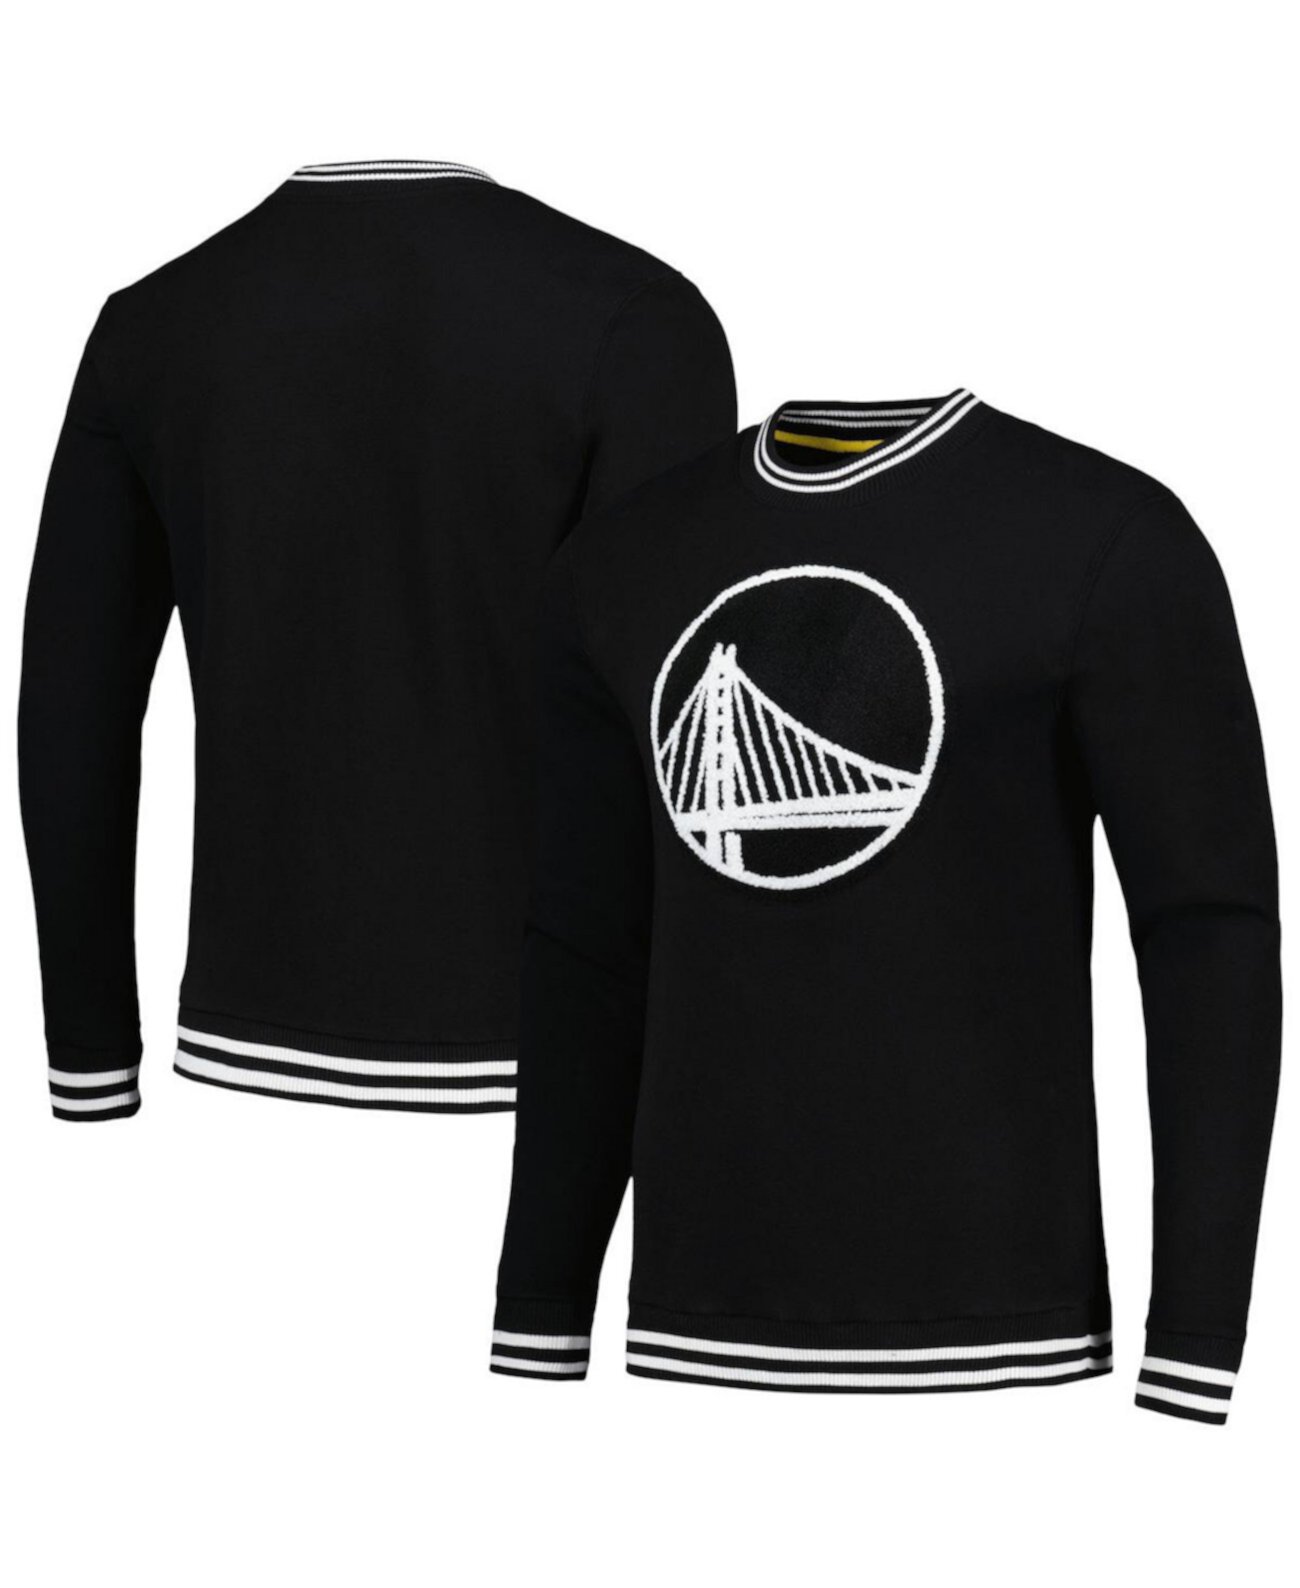 Мужской черный пуловер Golden State Warriors Club Level свитшот Stadium Essentials